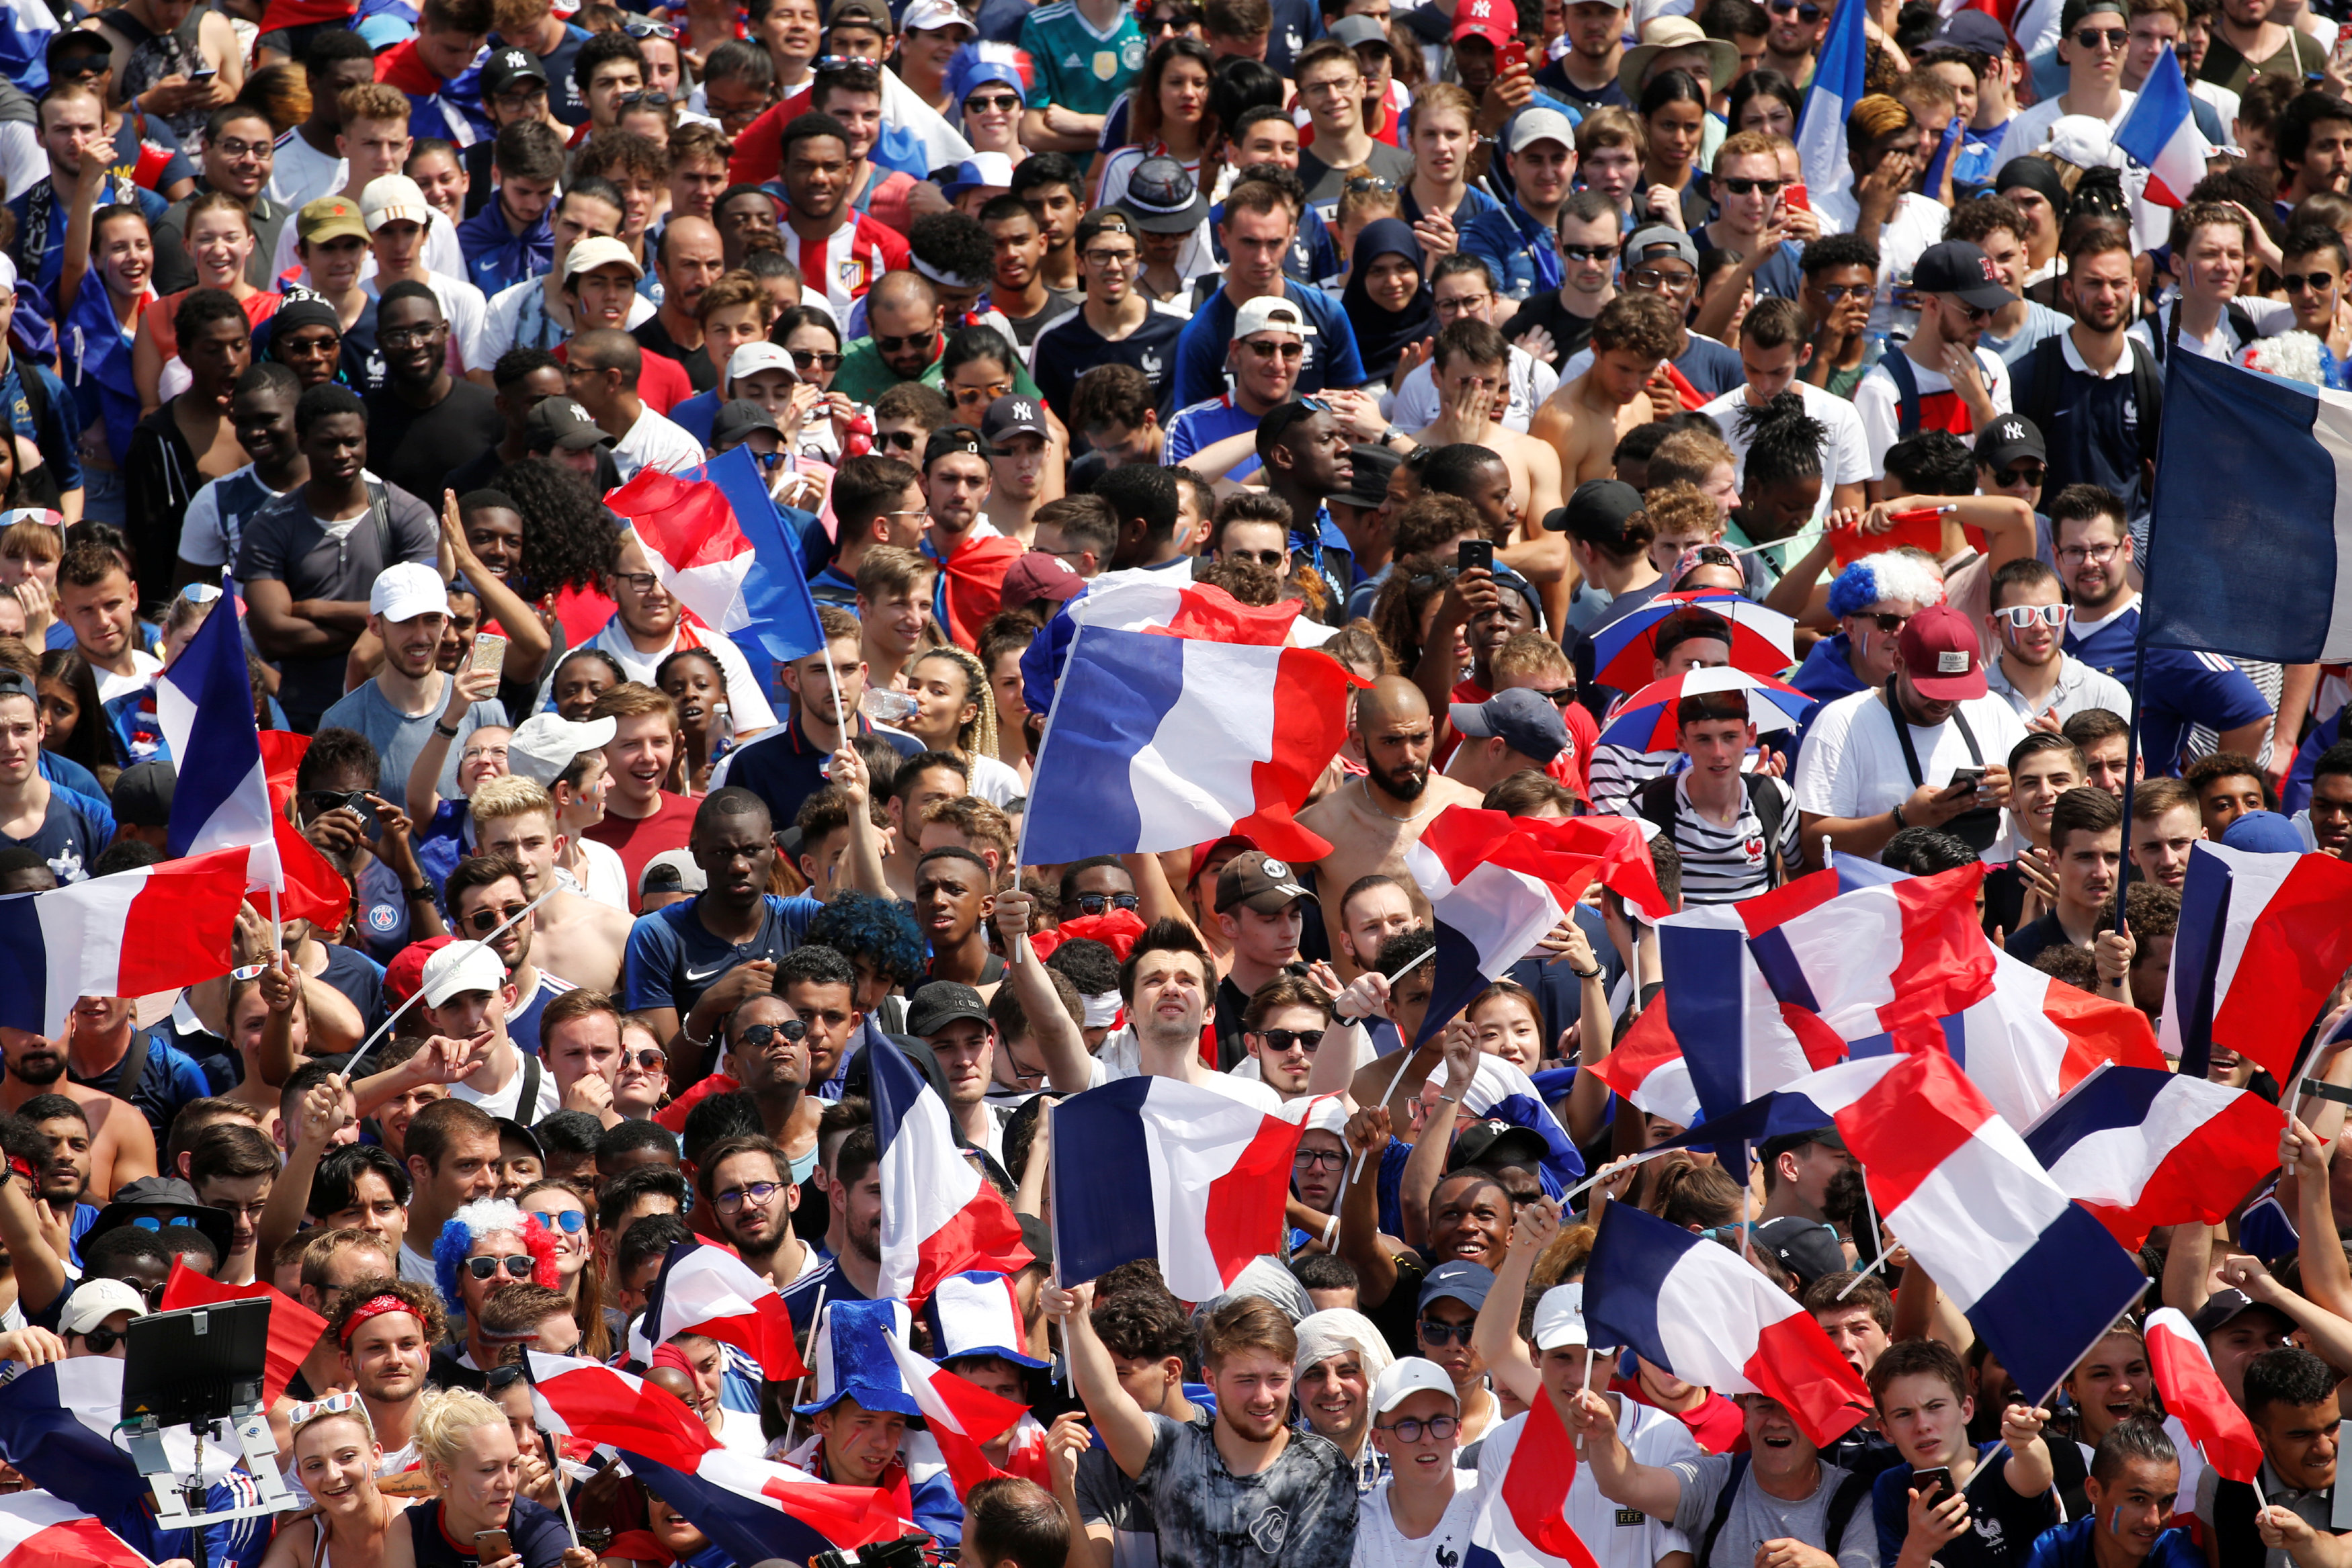 Франция - Хорватия 4:2. Команда Дешама победила на ЧМ-2018 и выиграла второй Кубок Мира. Видео голов, фото